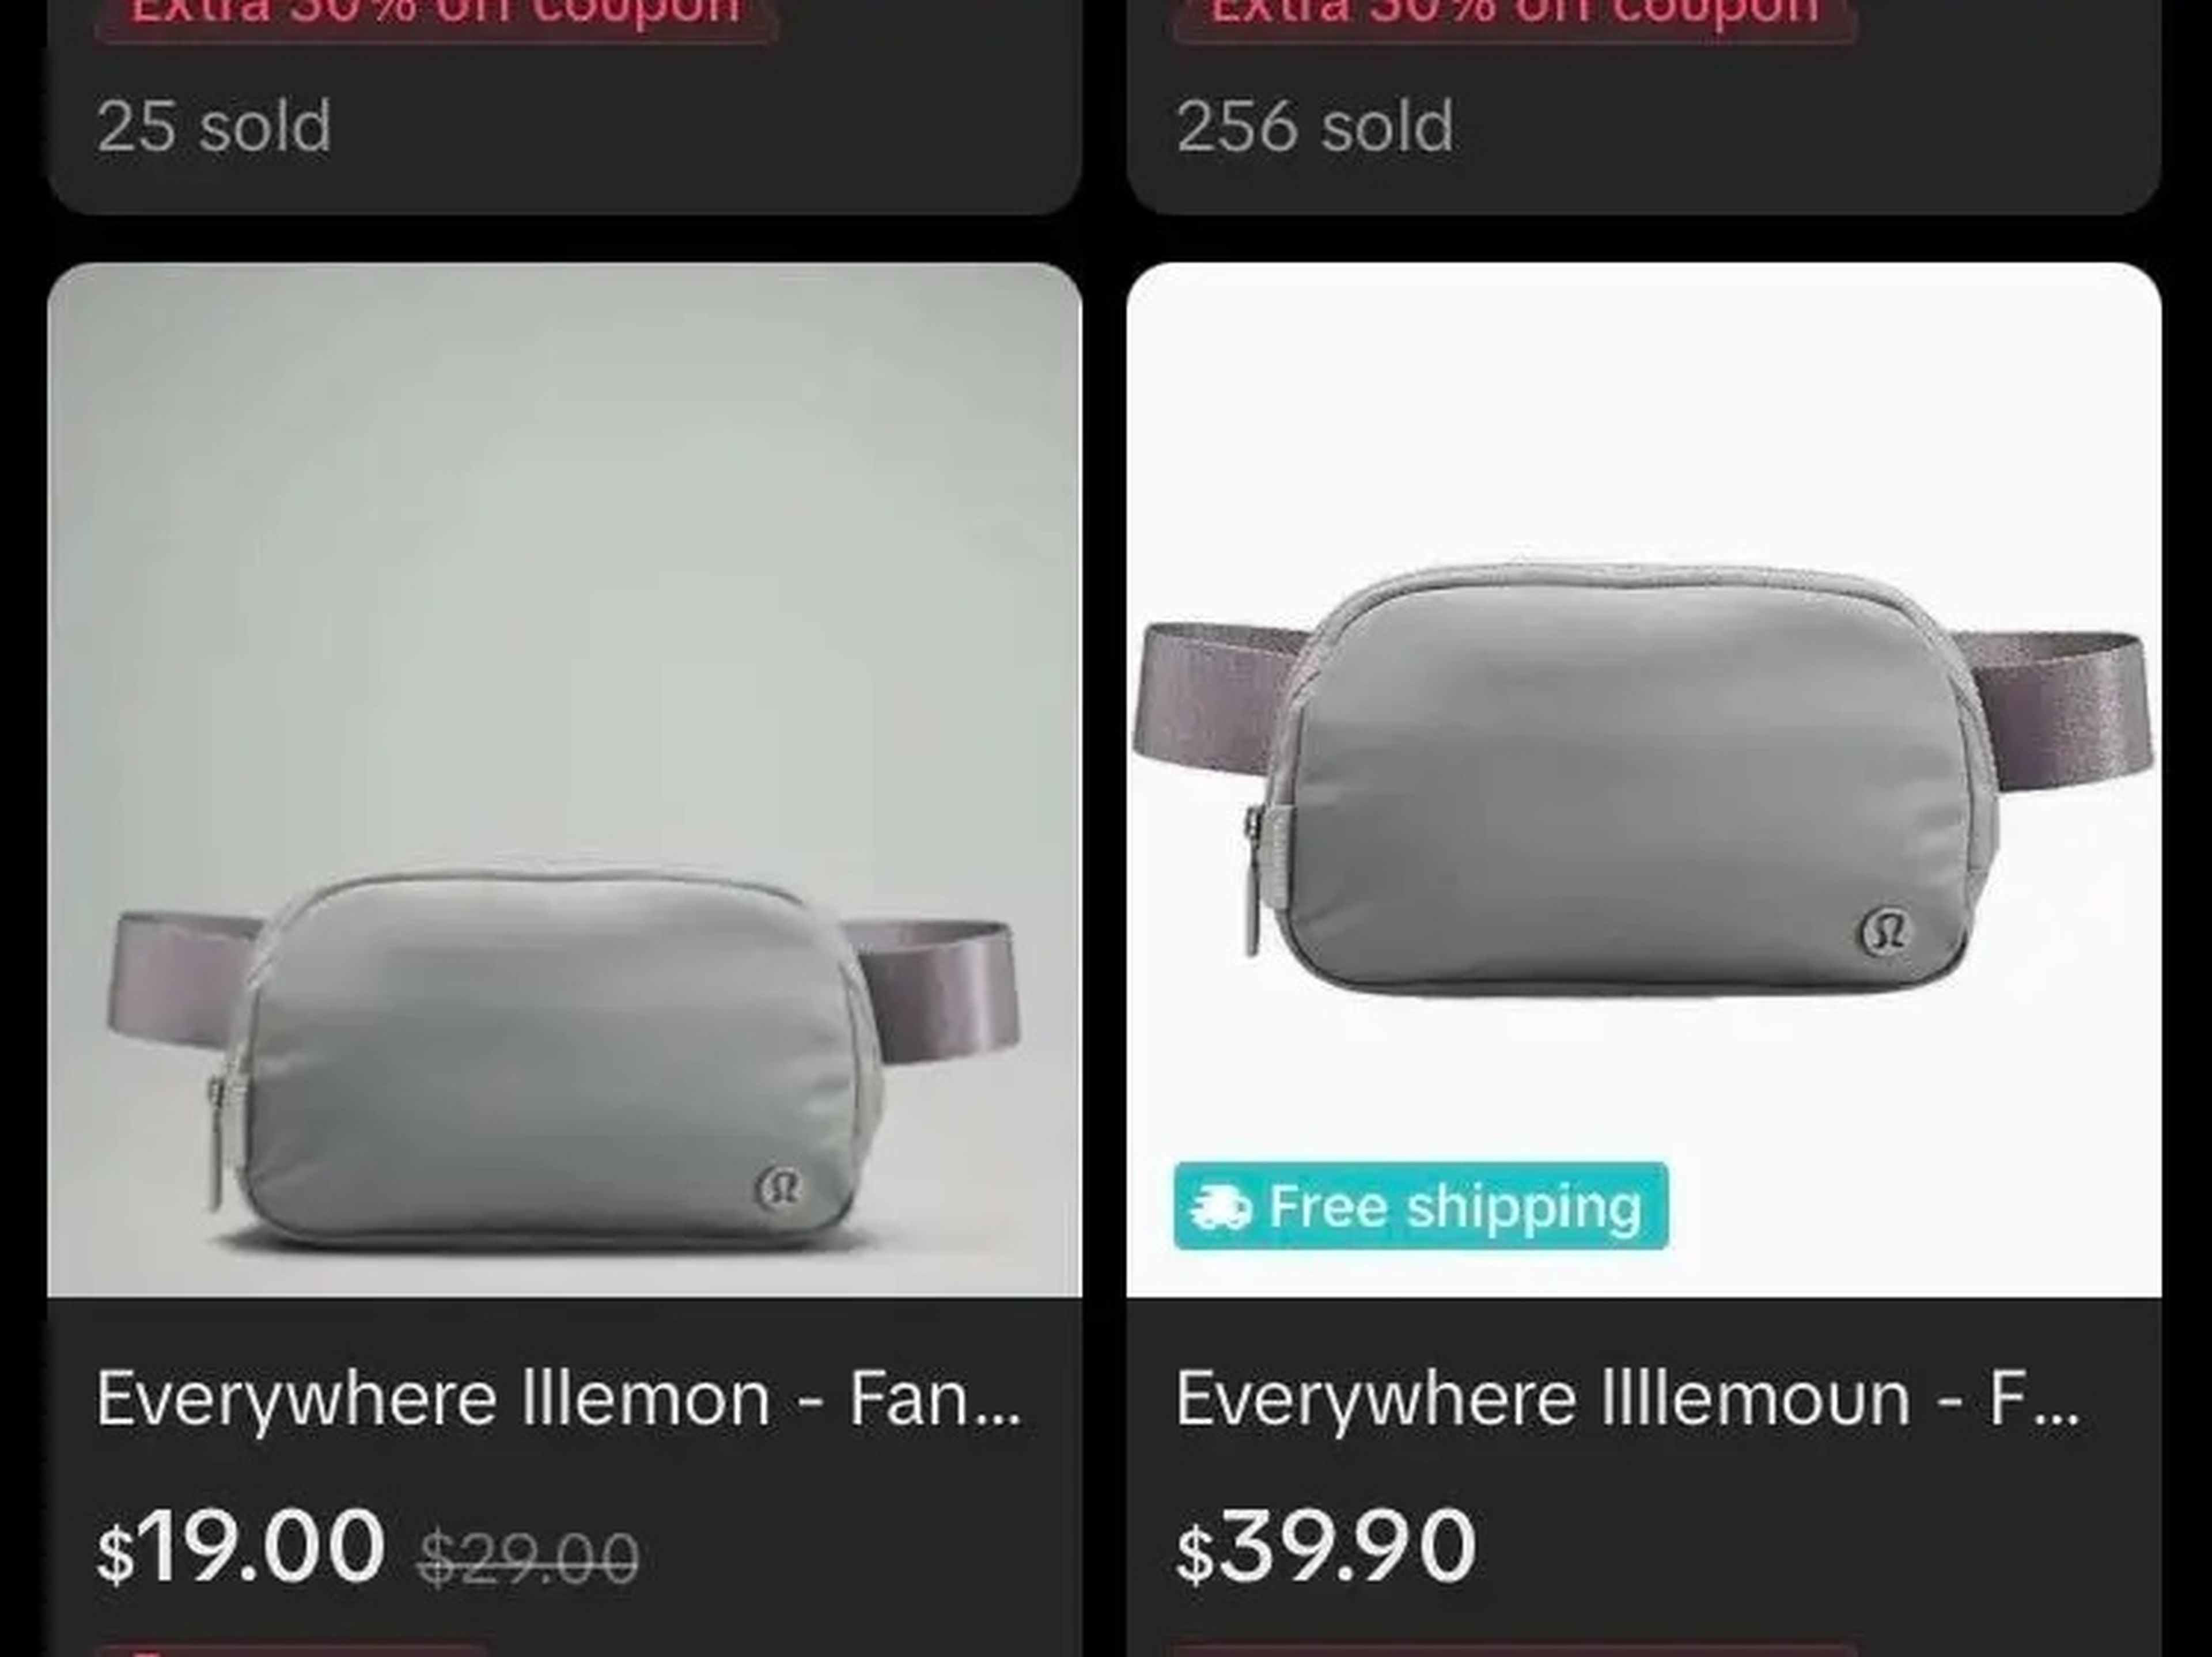 Un vendedor de TikTok ofrecía bolsas "Everywhere lllemon" y "Everywhere llllemoun" a diferentes precios.